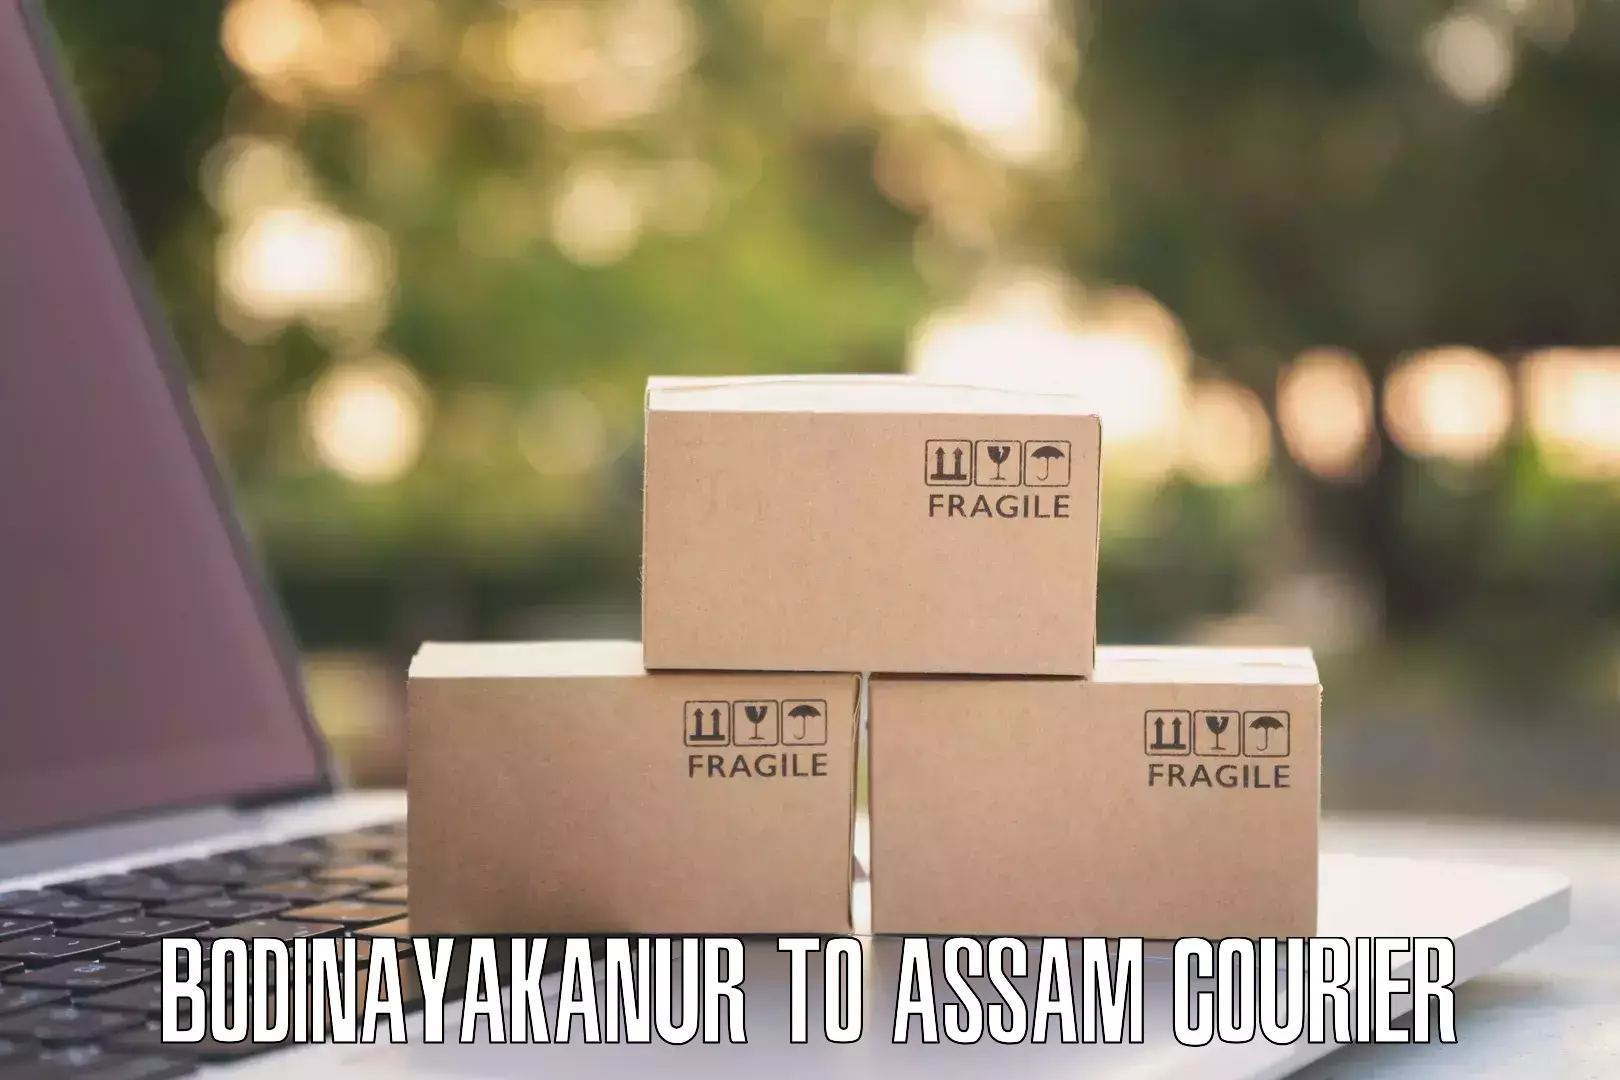 E-commerce shipping partnerships Bodinayakanur to Amoni